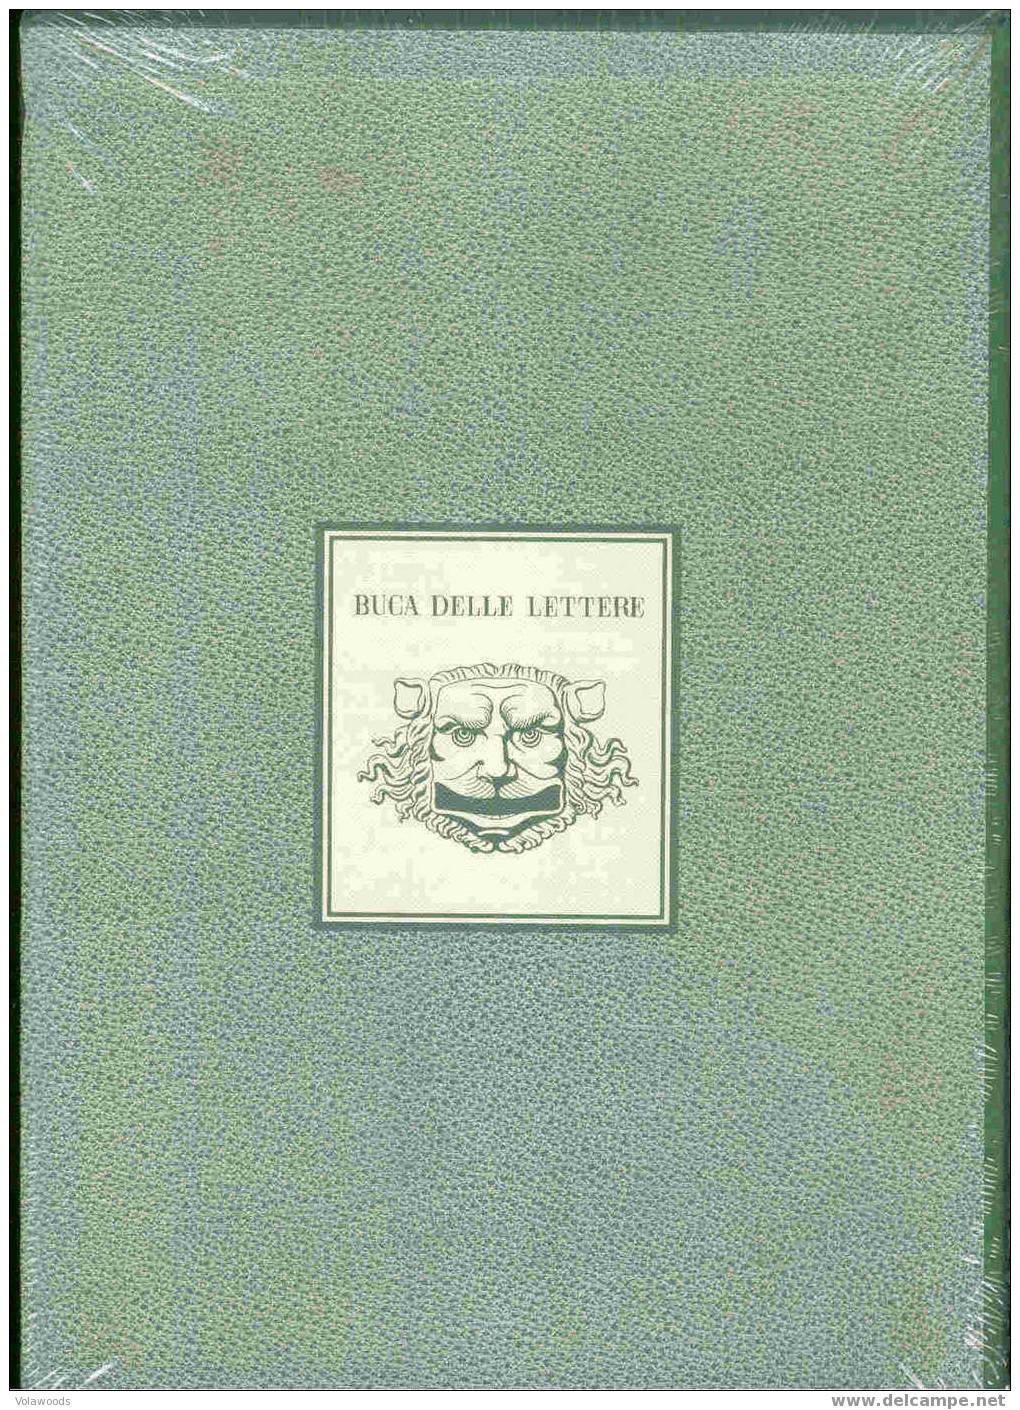 Italia - Libro Dei Francobolli 1995 Ancora Incellophanato- Annata Completa Francobolli/libretti/foglietti - Annate Complete